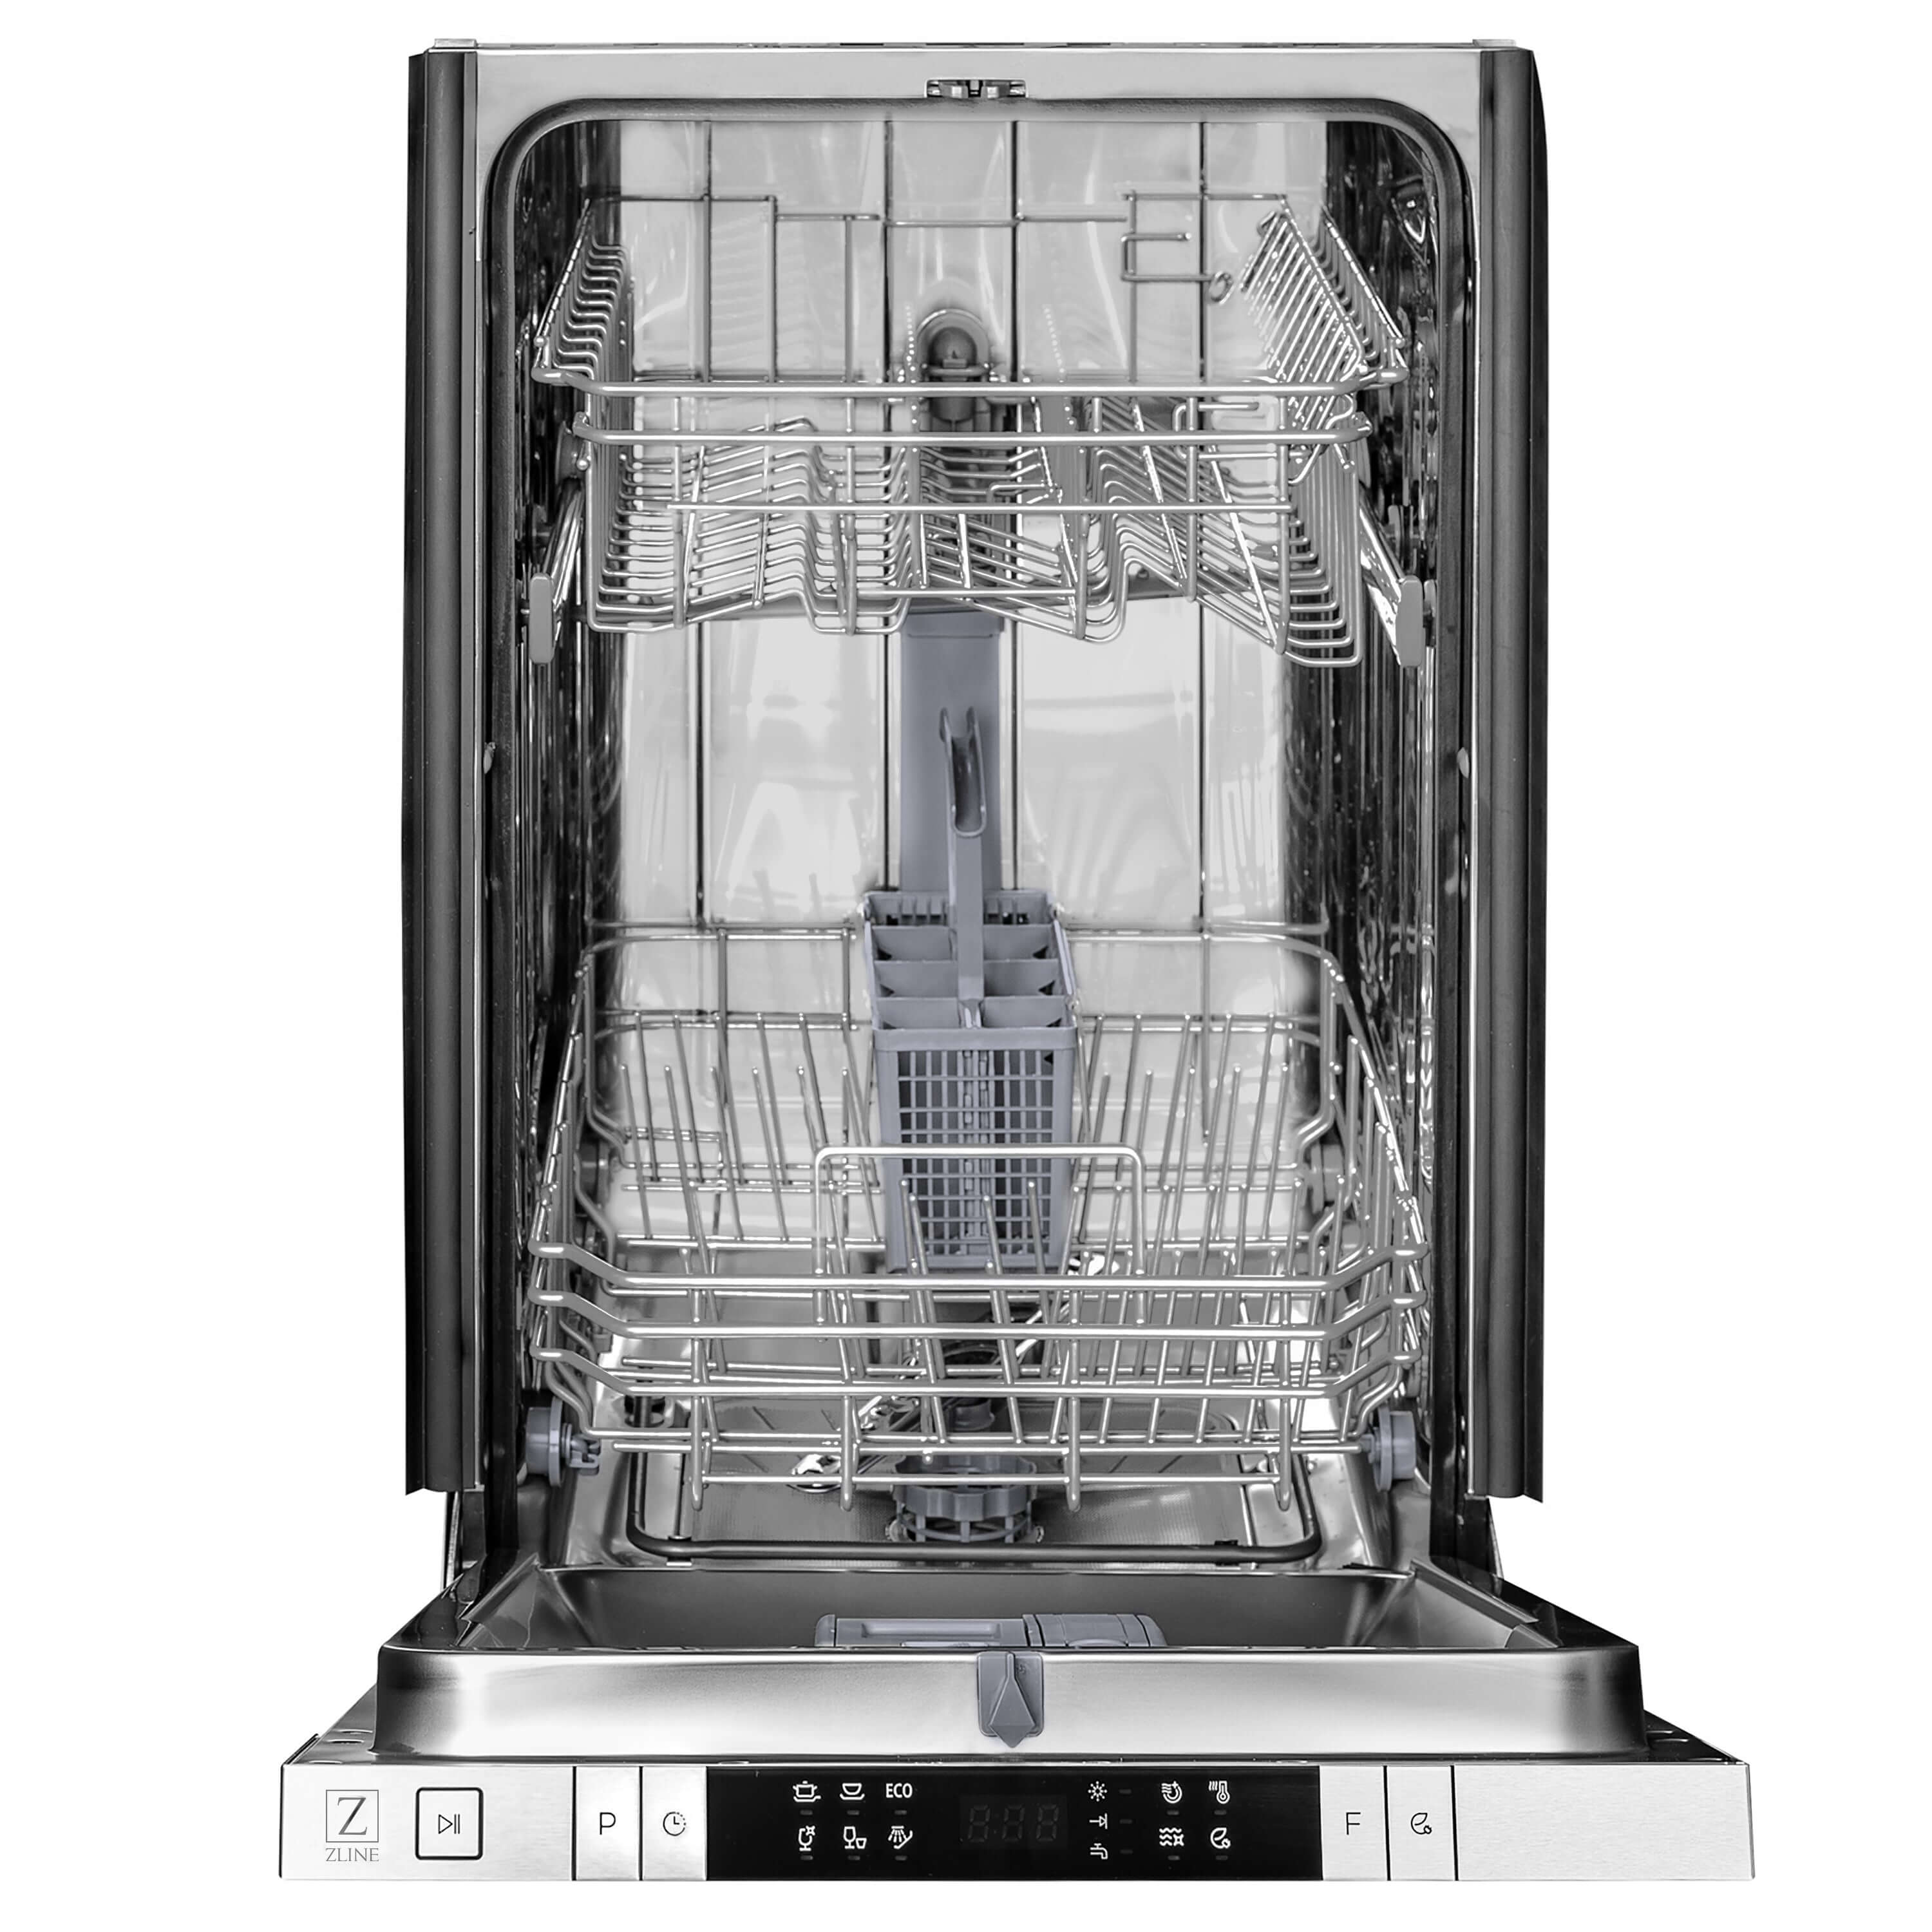 ZLINE 18 in. Compact Top Control Dishwasher front with door open.